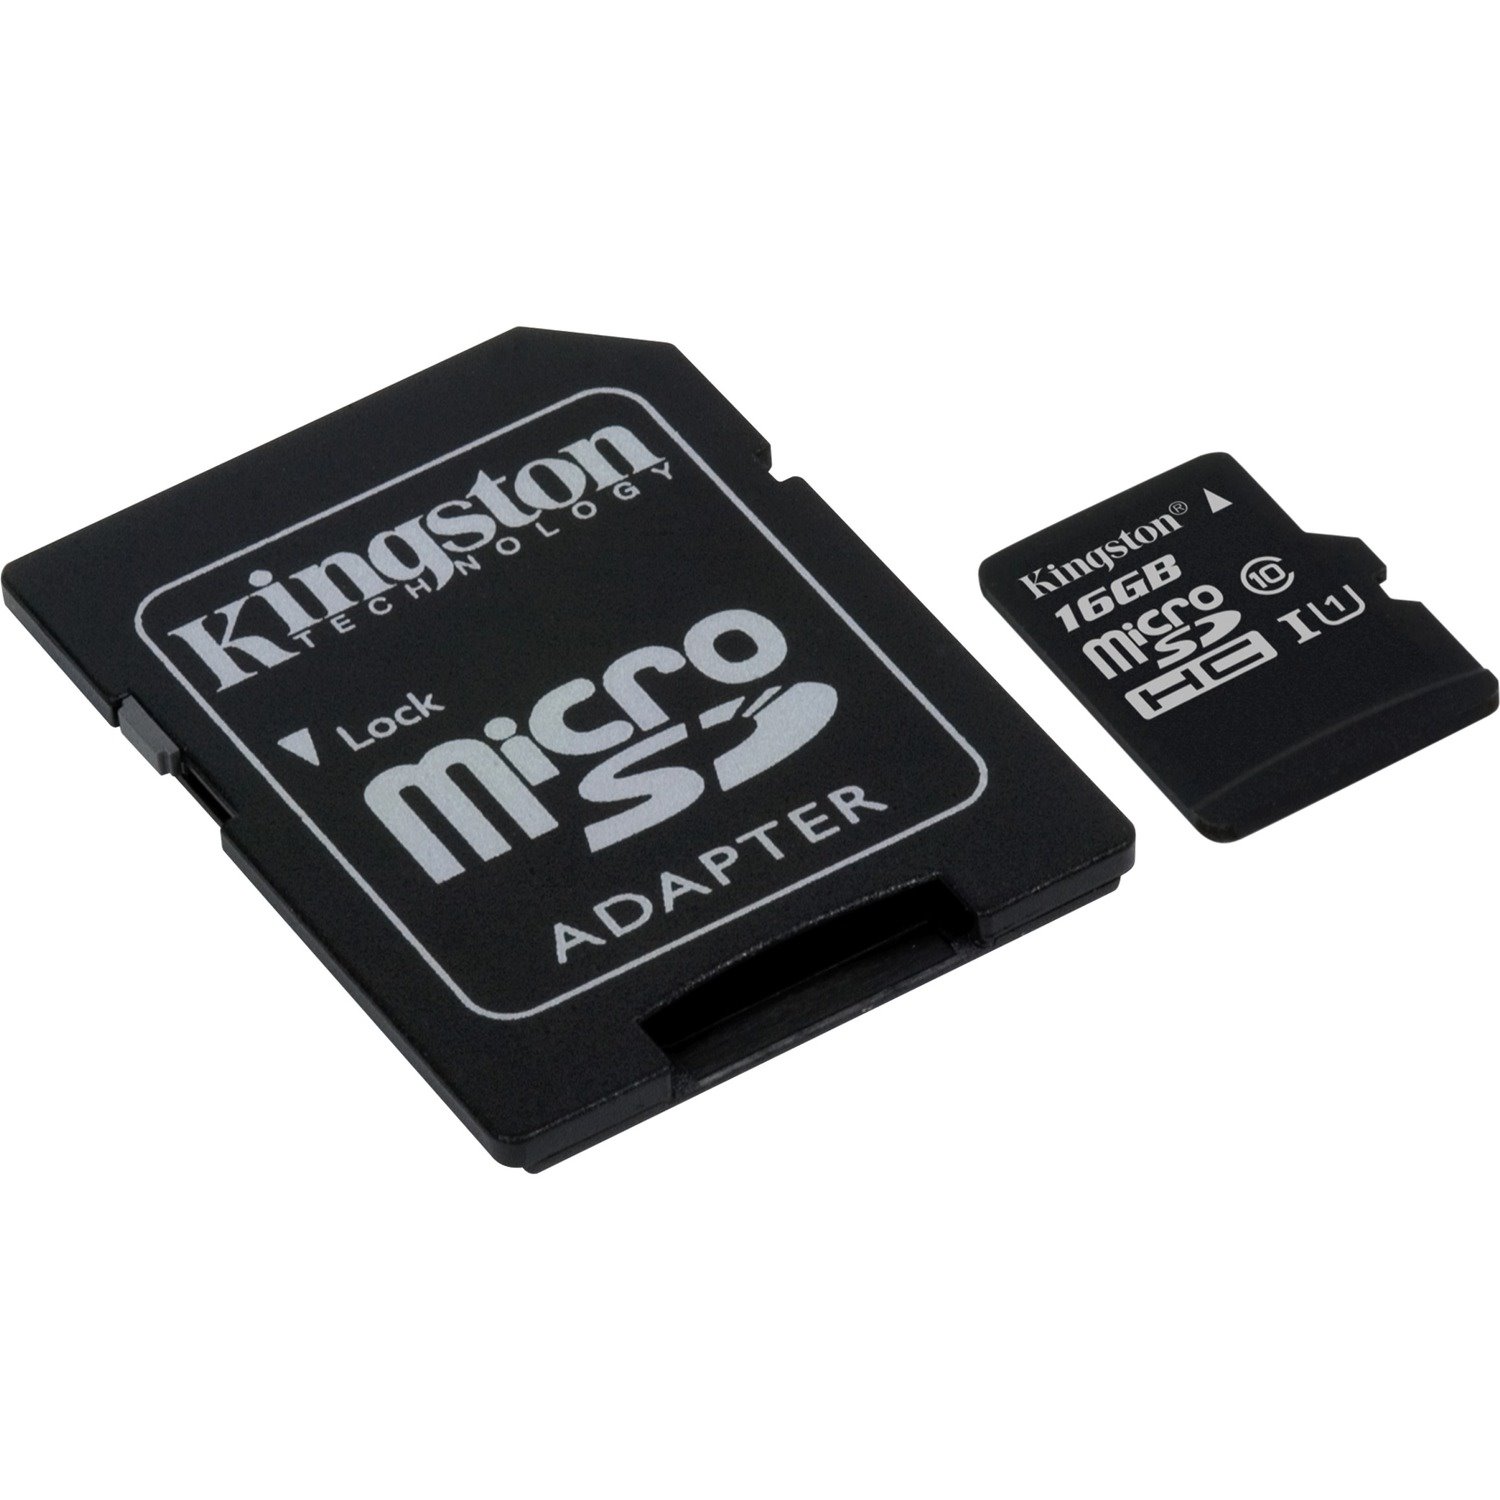 Kingston SDC10G2/16GBFR microSDHC Card 16GB Class 10 UHS-I